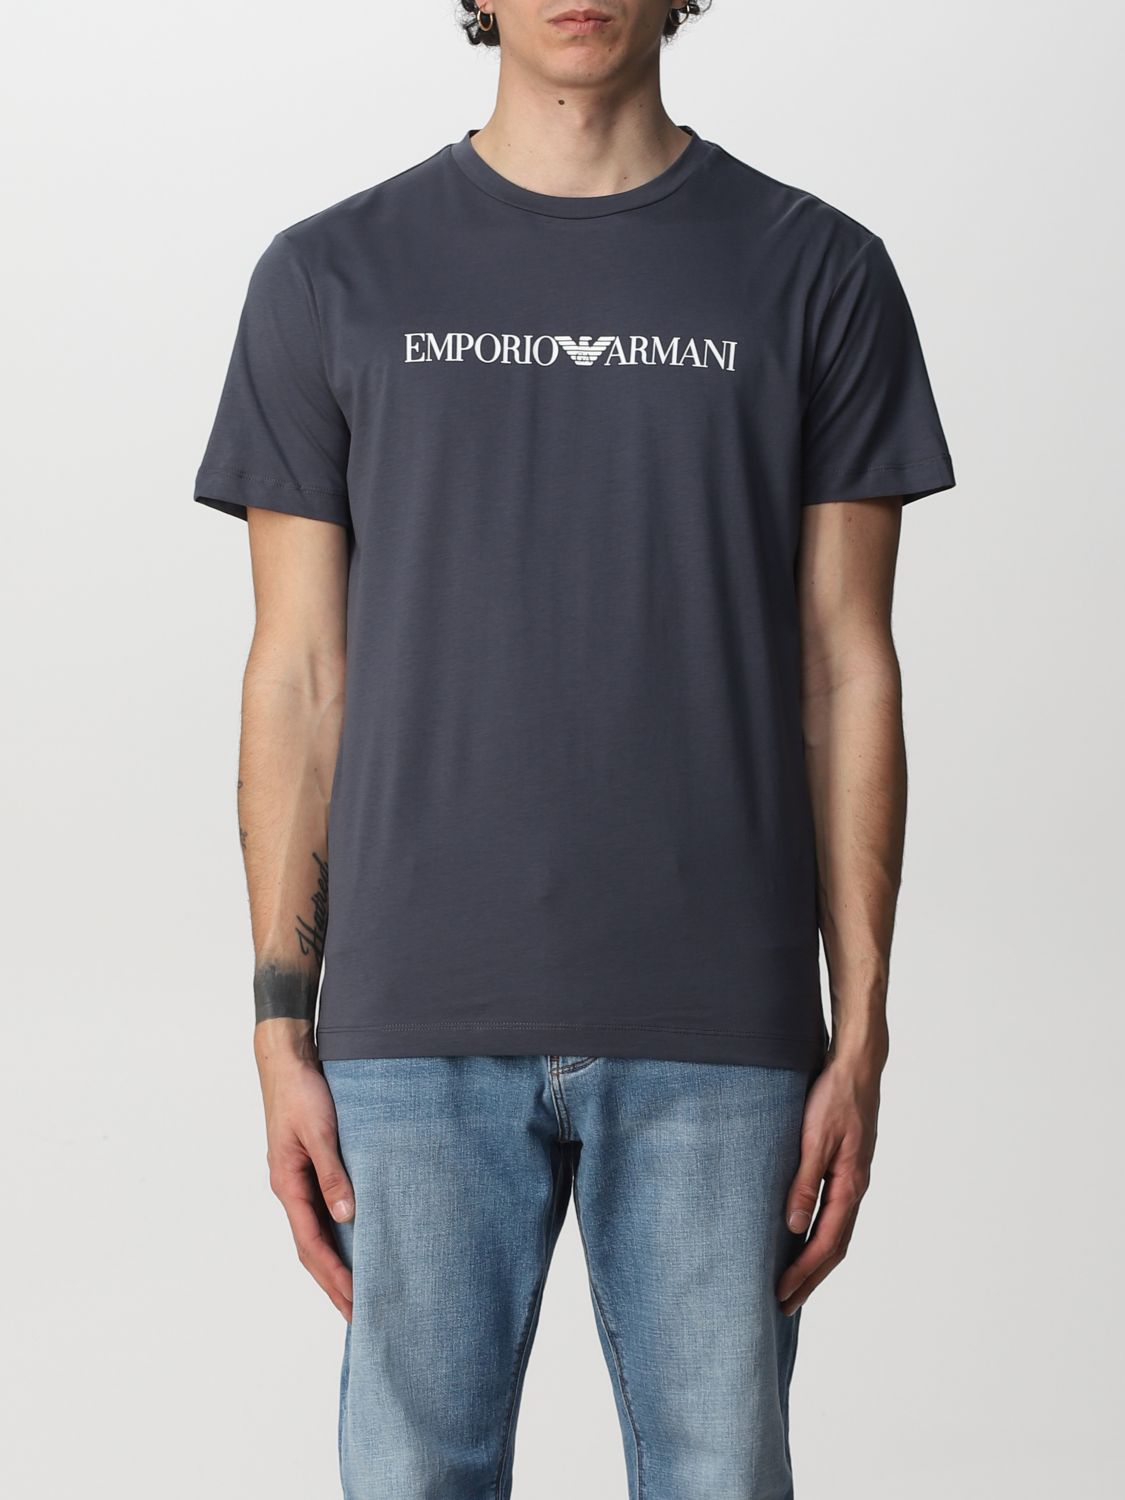 Emporio Armani Cotton T-shirt In Multicolor